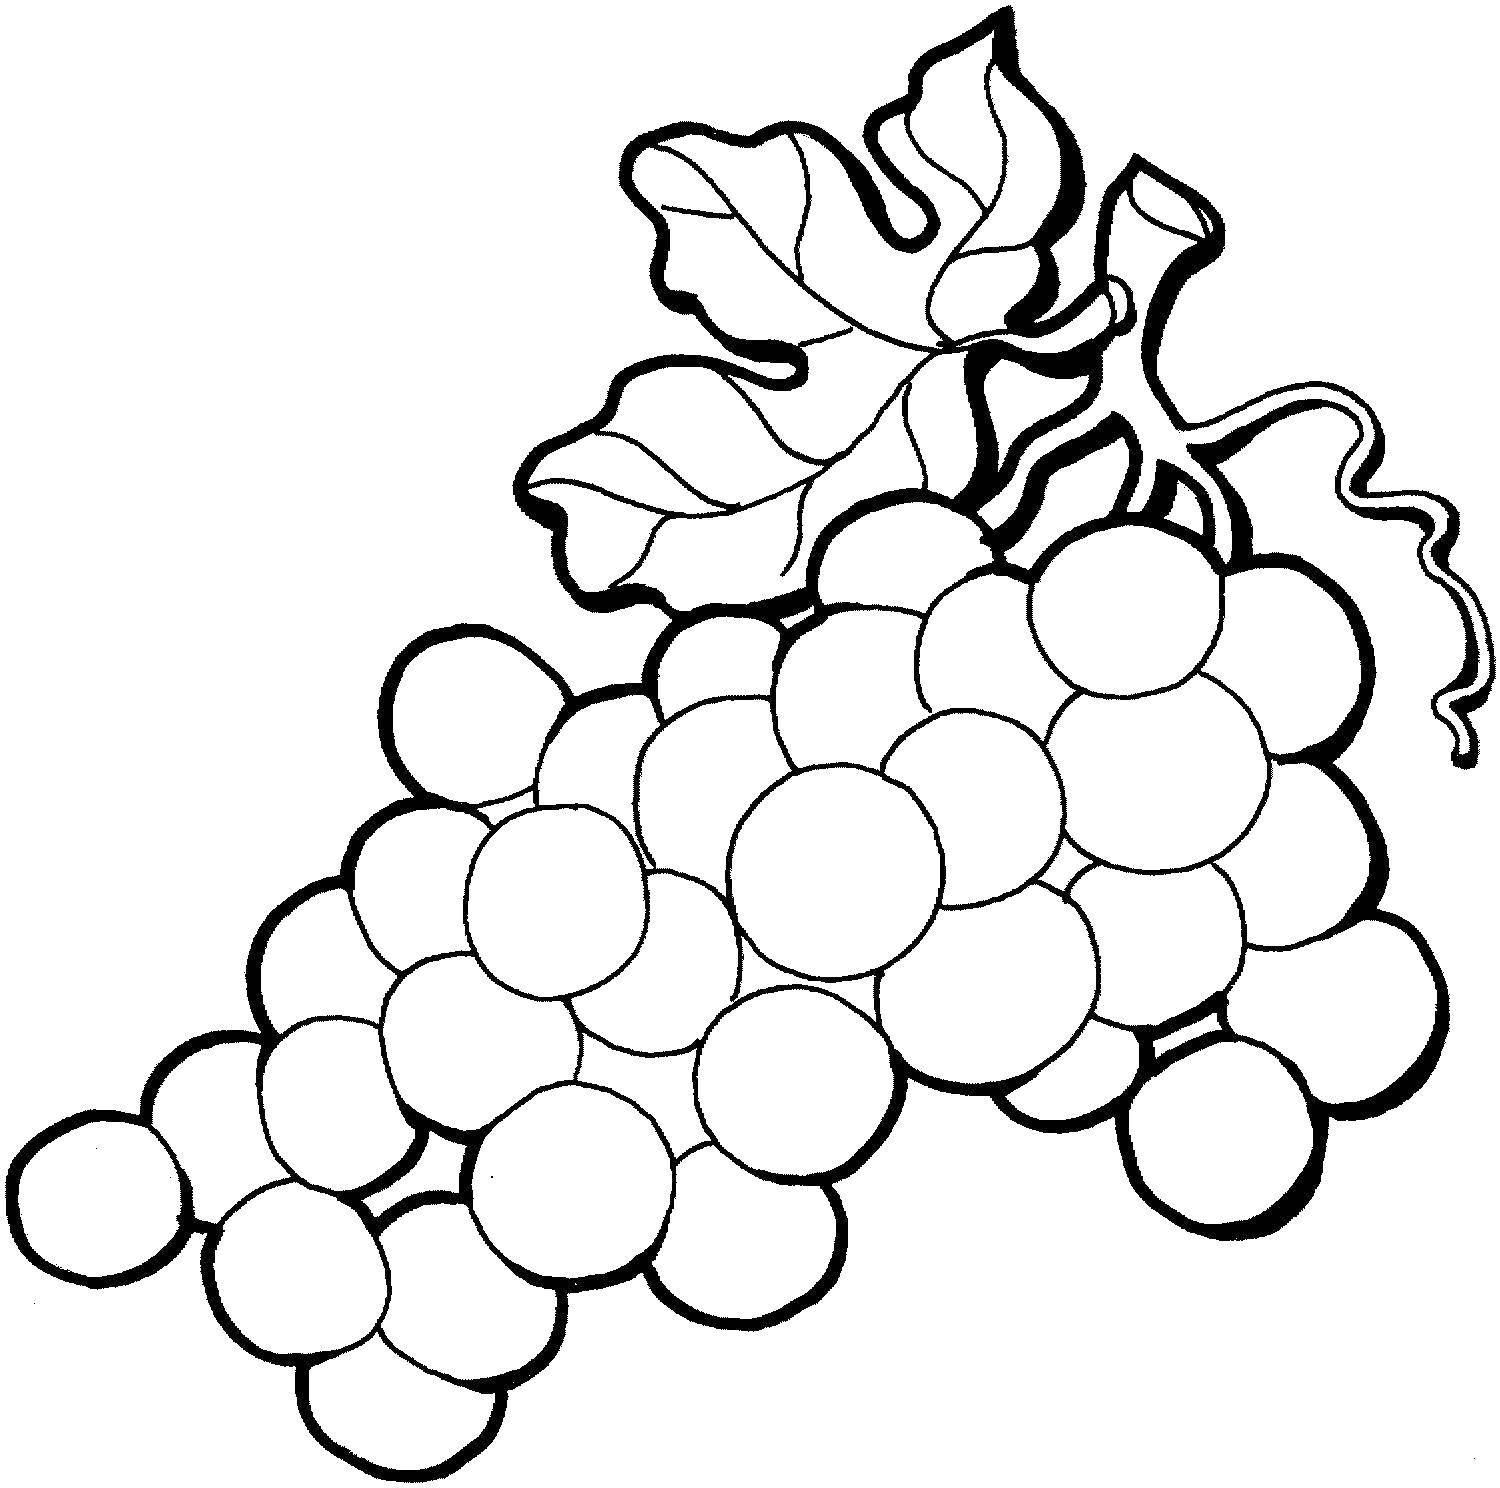 Раскраска Веселый виноград, скачать и распечатать раскраску раздела Ягоды